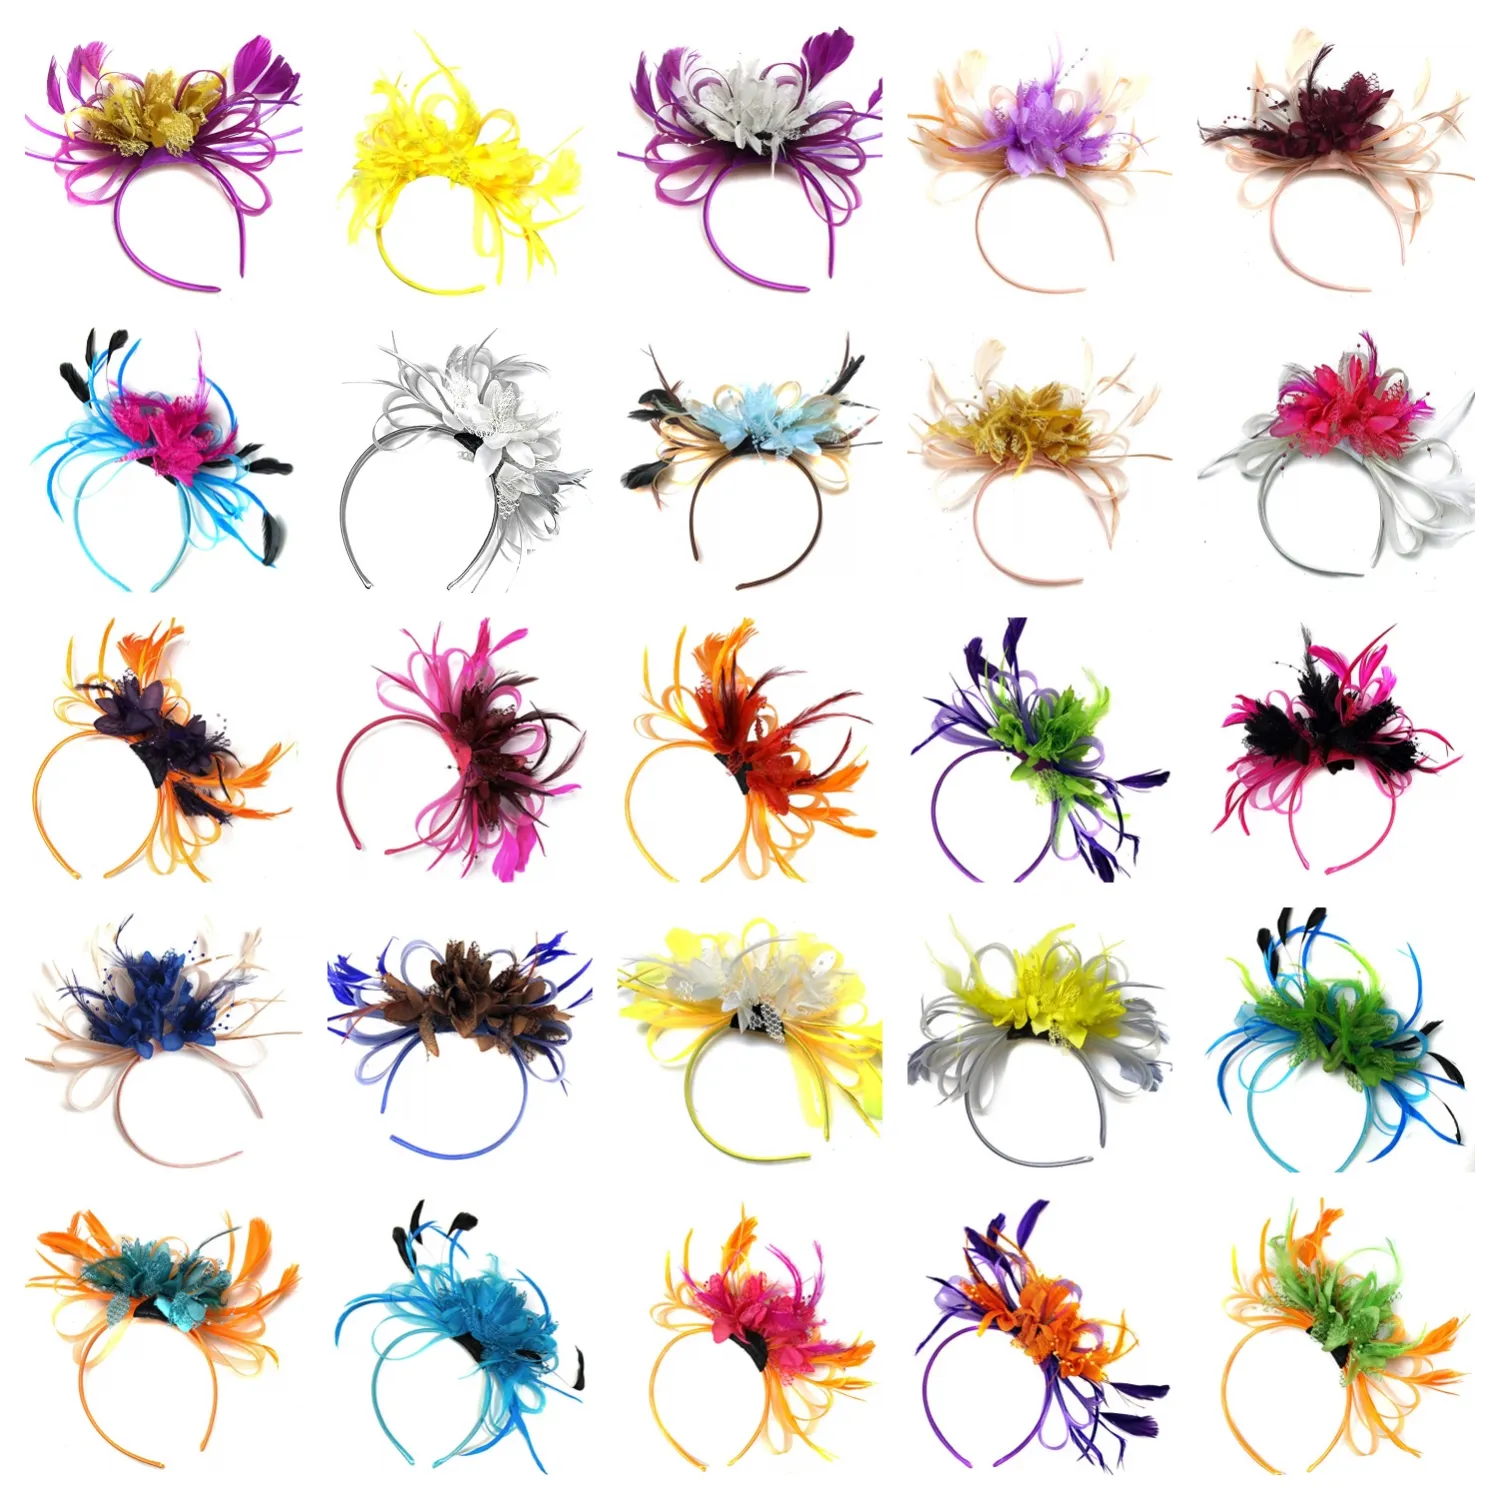 Fascinator jaring elastis elegan unik Aksesori pernikahan Fascinator bunga bros bulu banyak warna dengan ikat kepala untuk wanita